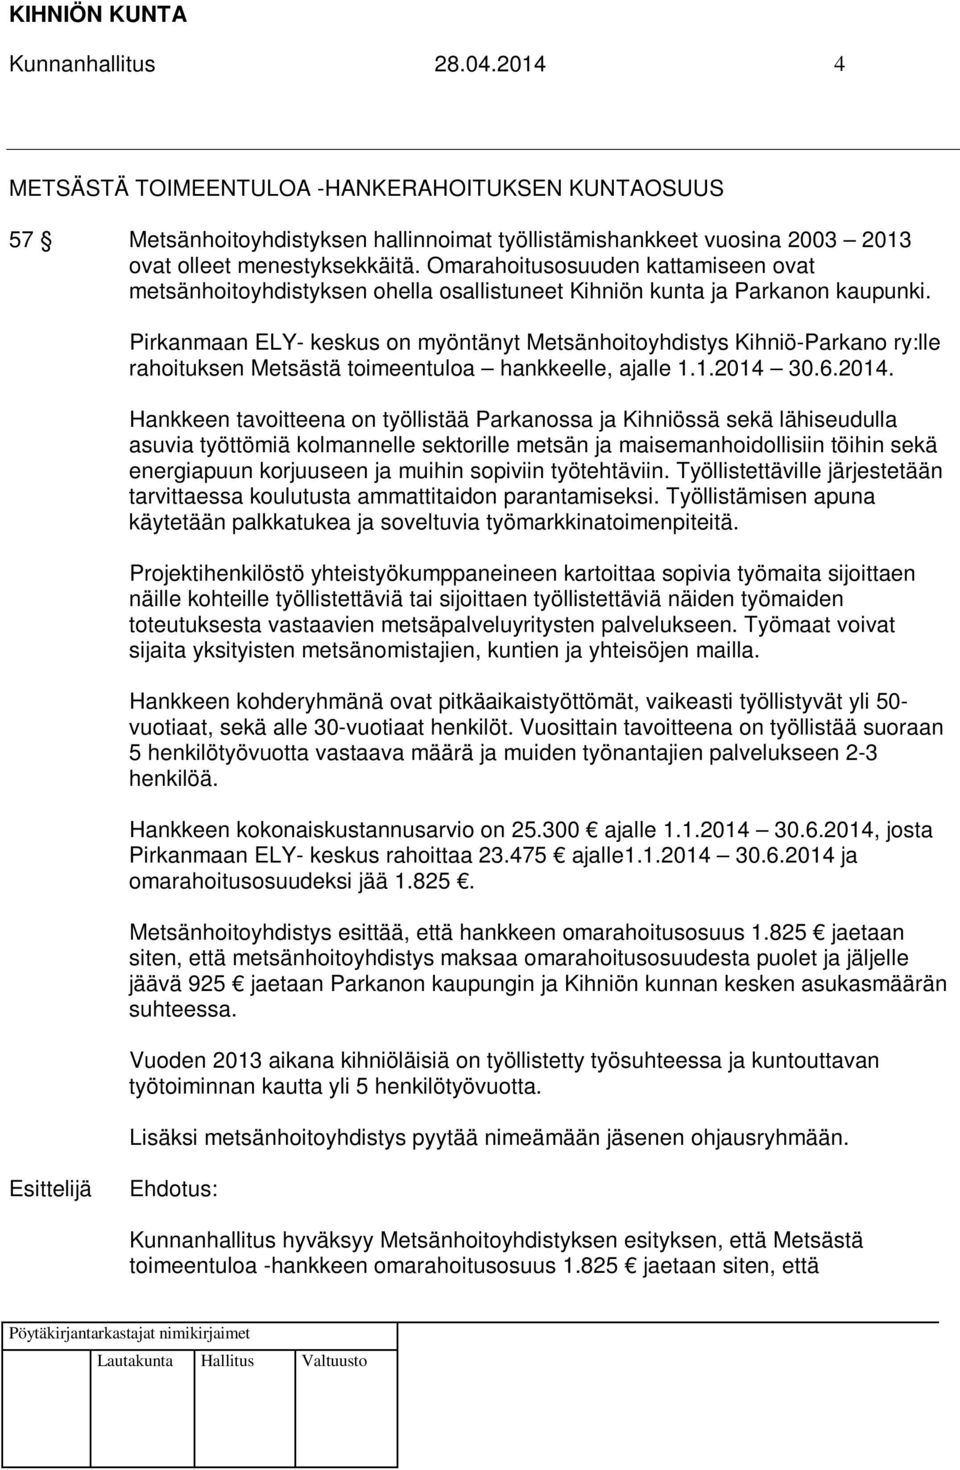 Pirkanmaan ELY- keskus on myöntänyt Metsänhoitoyhdistys Kihniö-Parkano ry:lle rahoituksen Metsästä toimeentuloa hankkeelle, ajalle 1.1.2014 